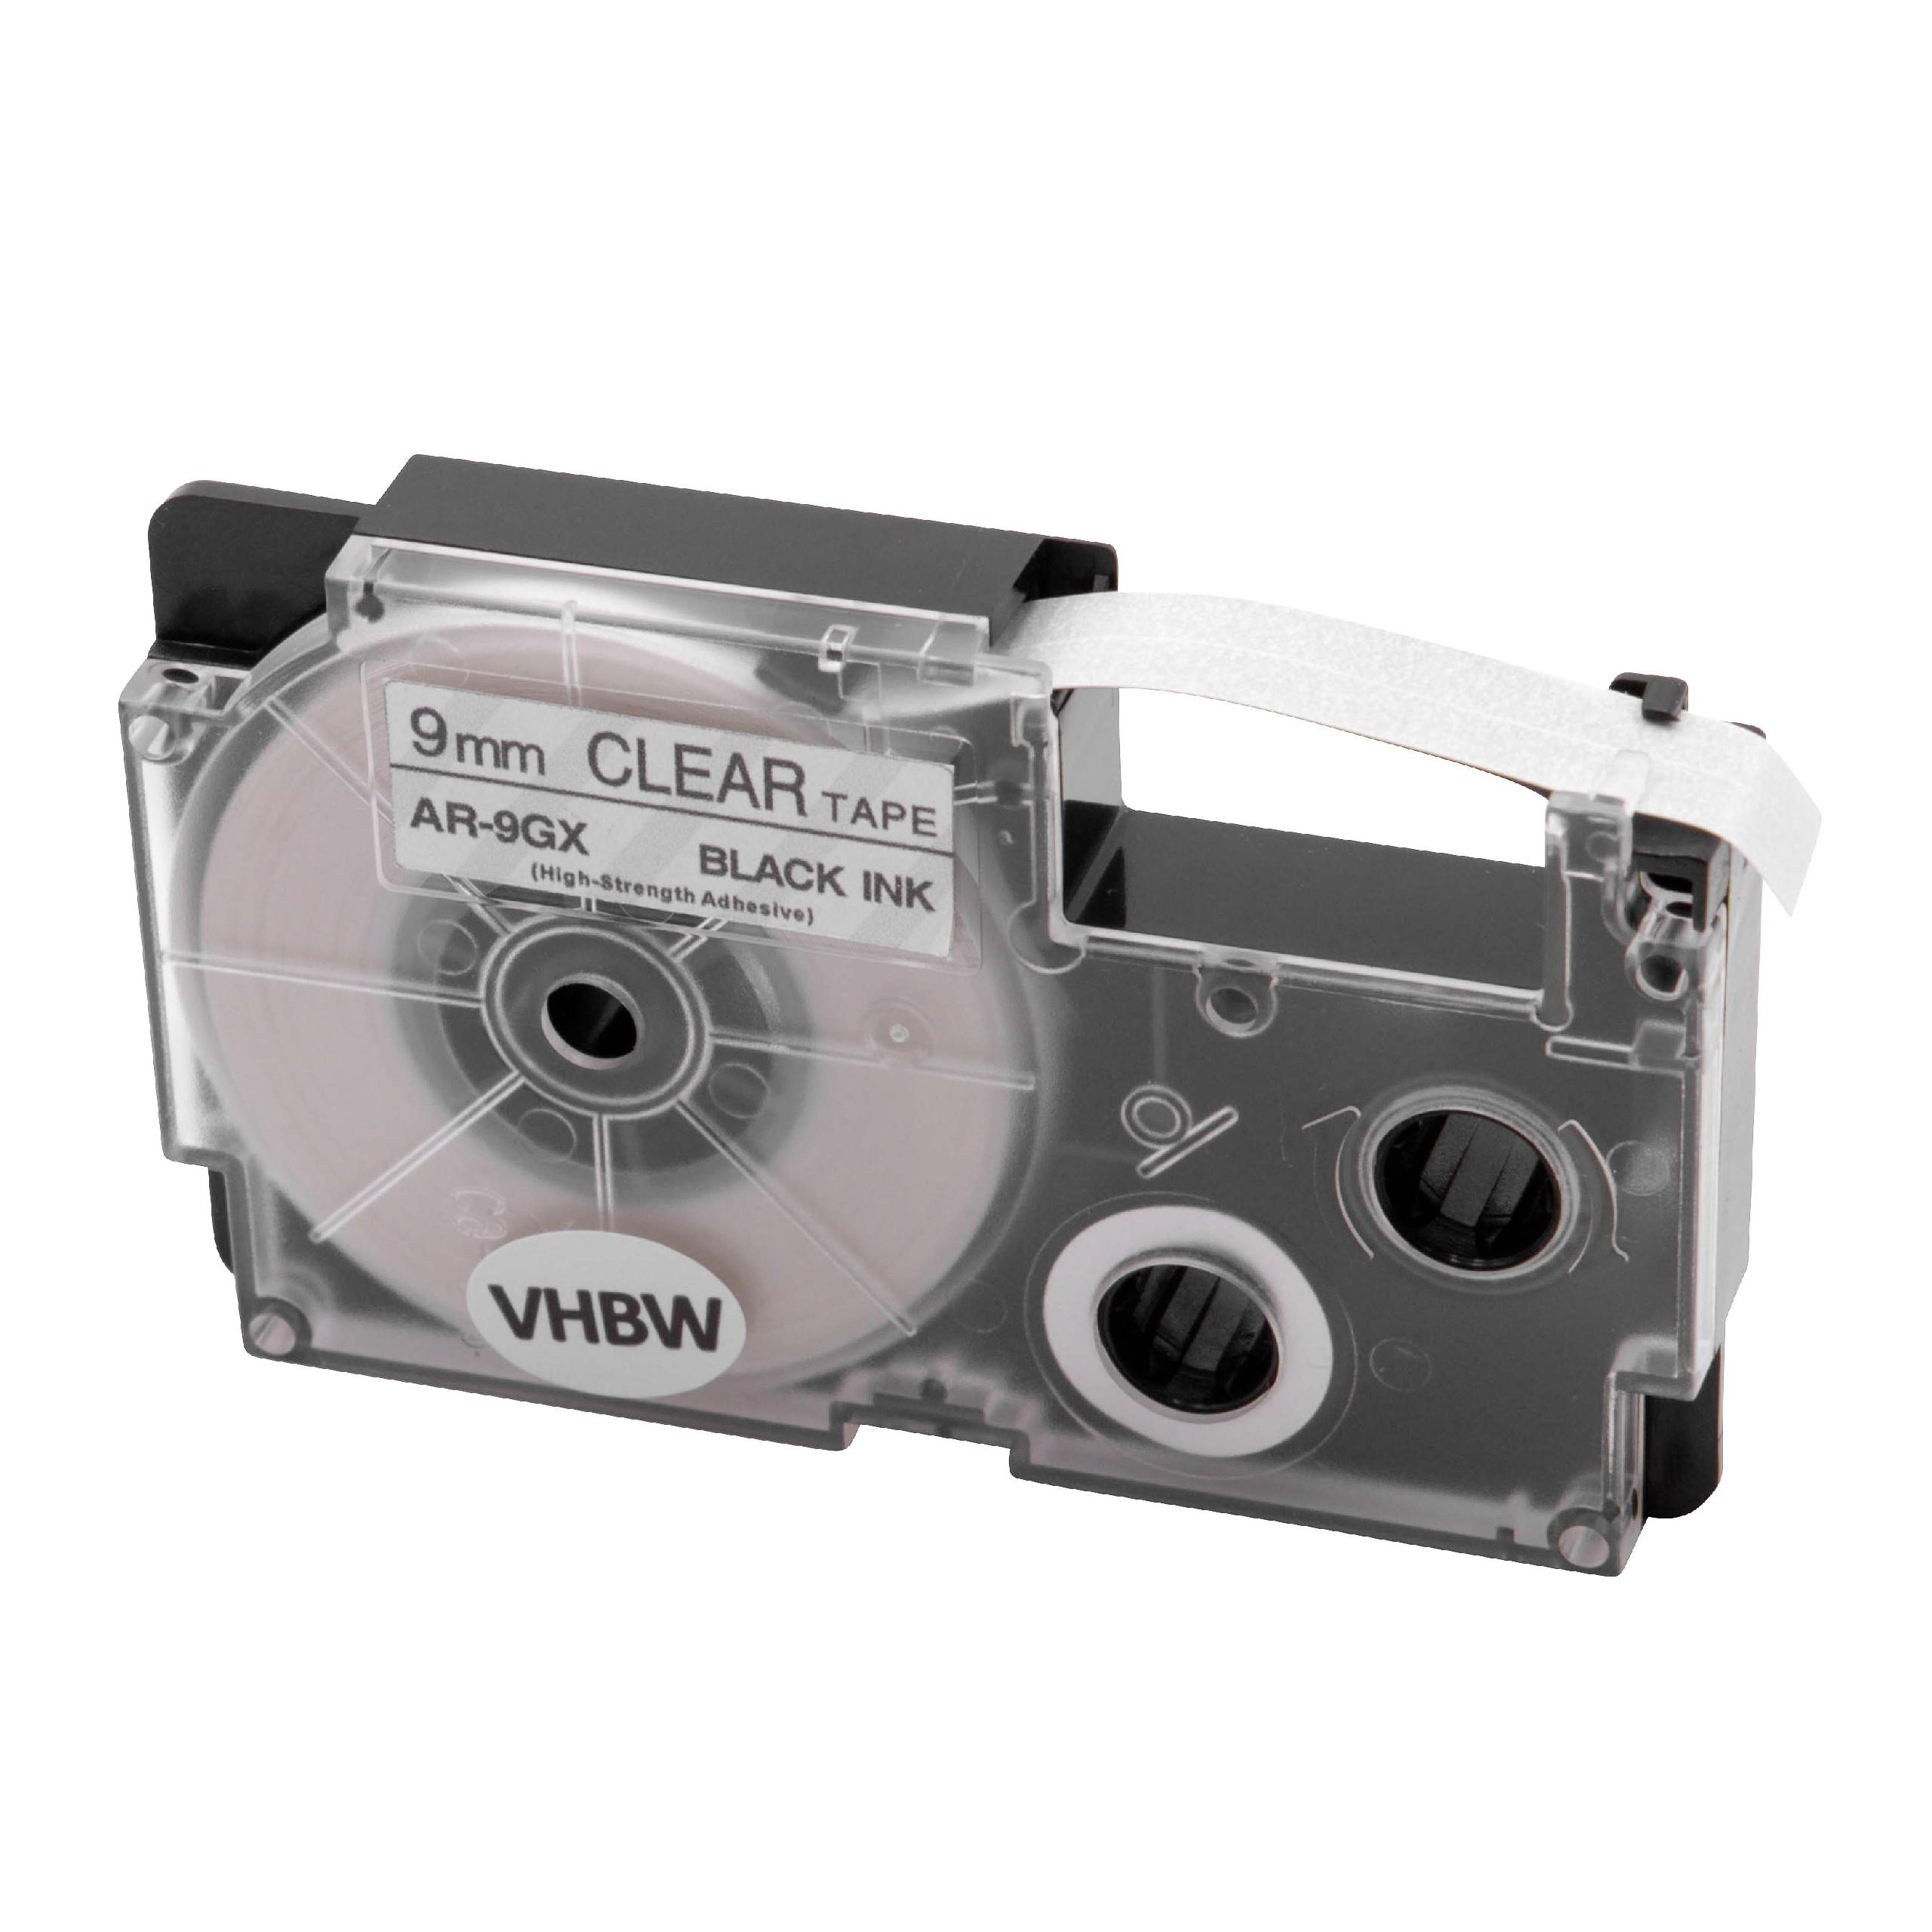 Cassette à ruban remplace Casio XR-9GX - 9mm lettrage Noir ruban Transparent